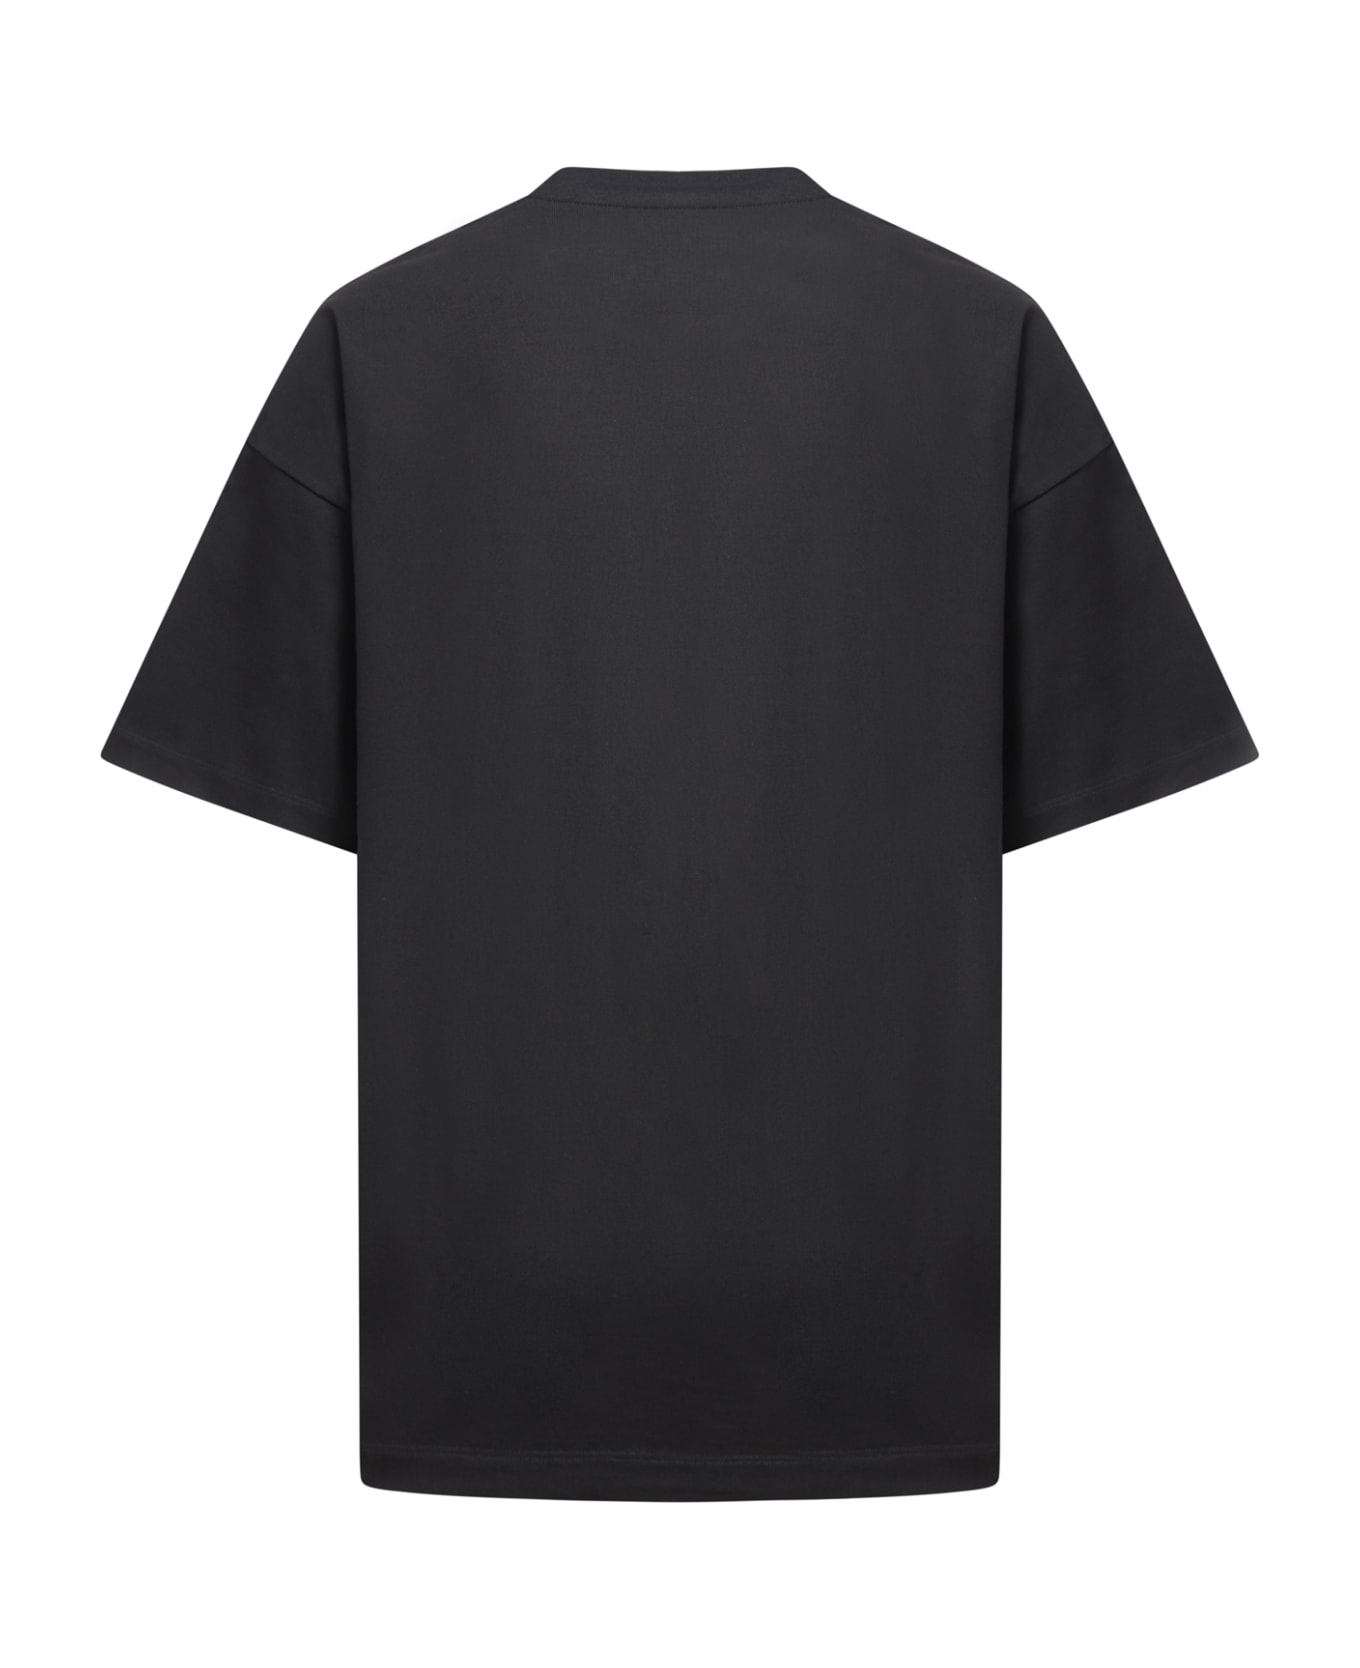 OAMC Rings T-shirt - Black